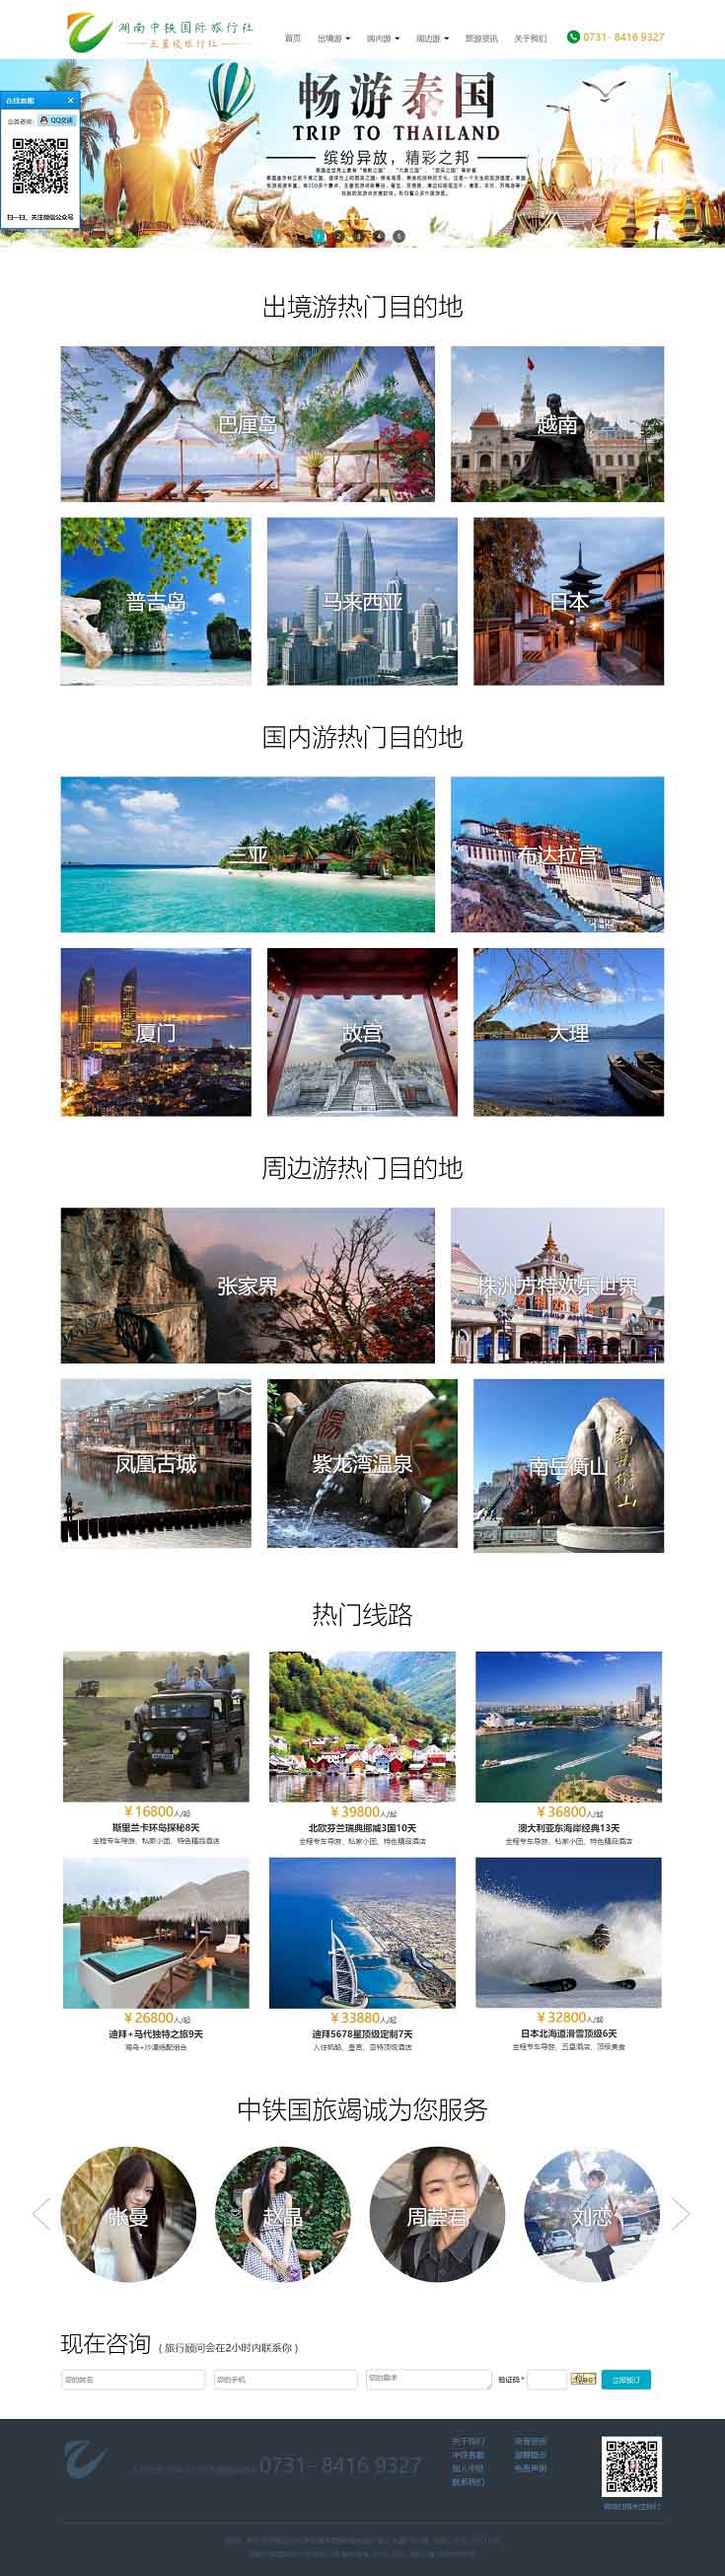 湖南中铁国际旅行社